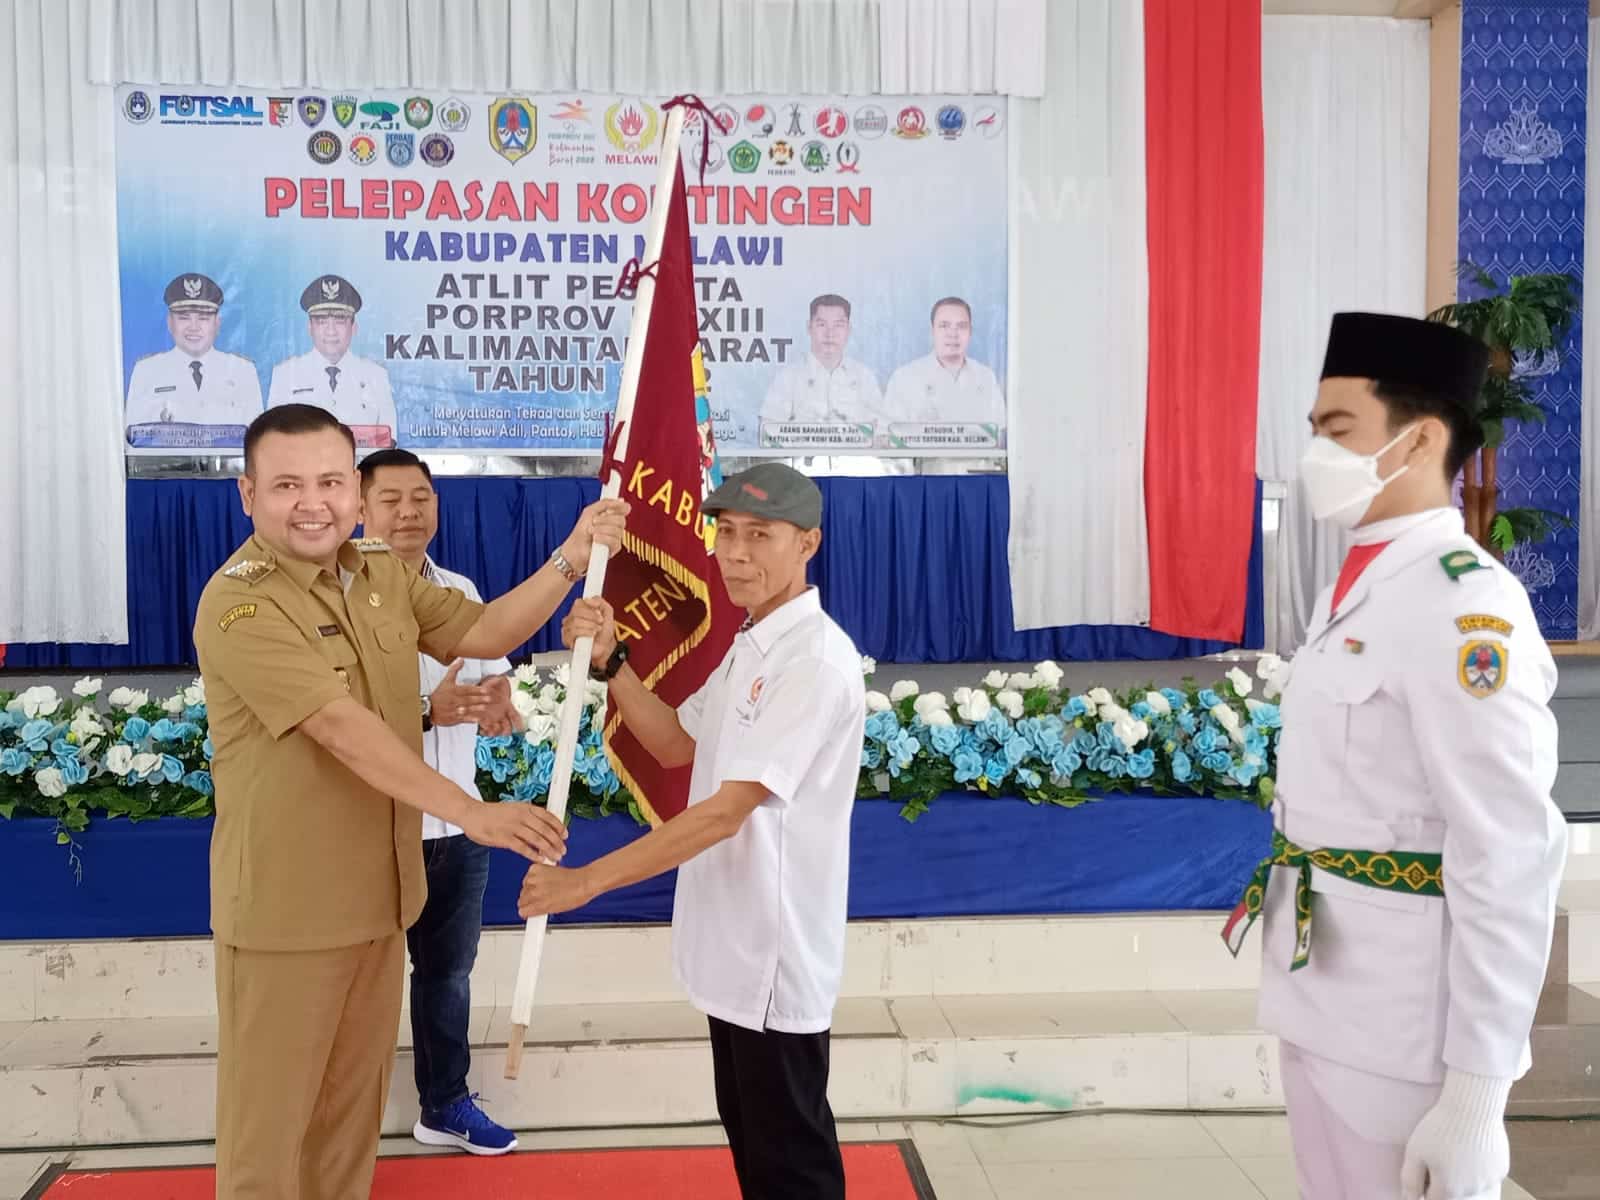 Bupati Melawi, Dadi Sunarya Usfa Yursa melepas secara resmi kontingen Kabupaten Melawi untuk berlaga di ajang Porprov ke-XIII Kalbar tahun 2022, Senin (07/11/2022).